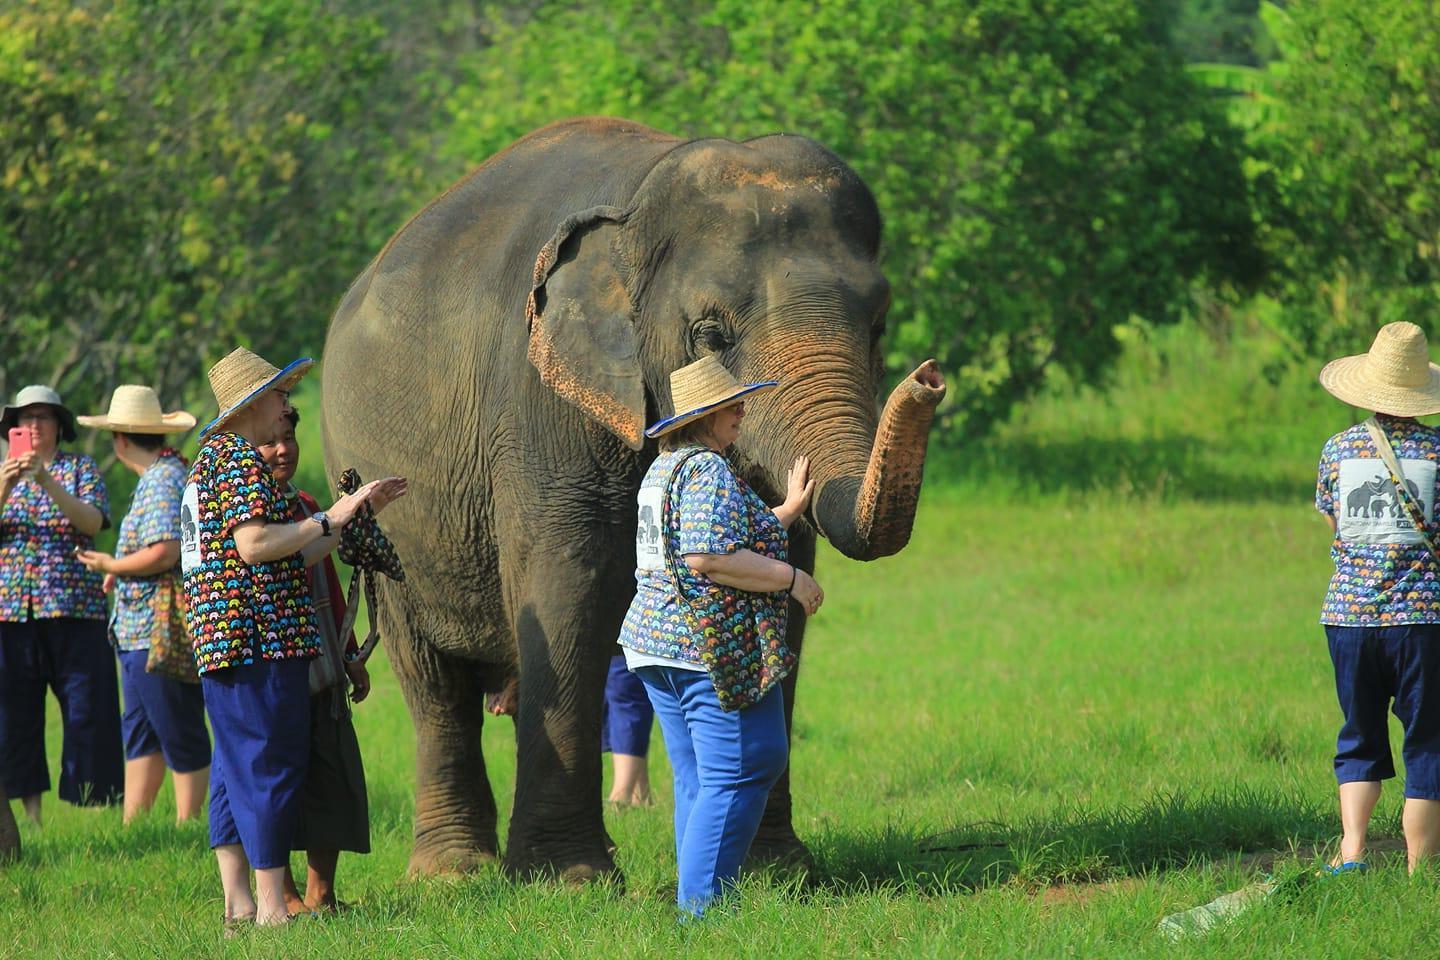 一群6人戴着草帽，穿着轻便的衣服，站在一头大象旁边. 中间的女人正在抚摸大象的鼻子.